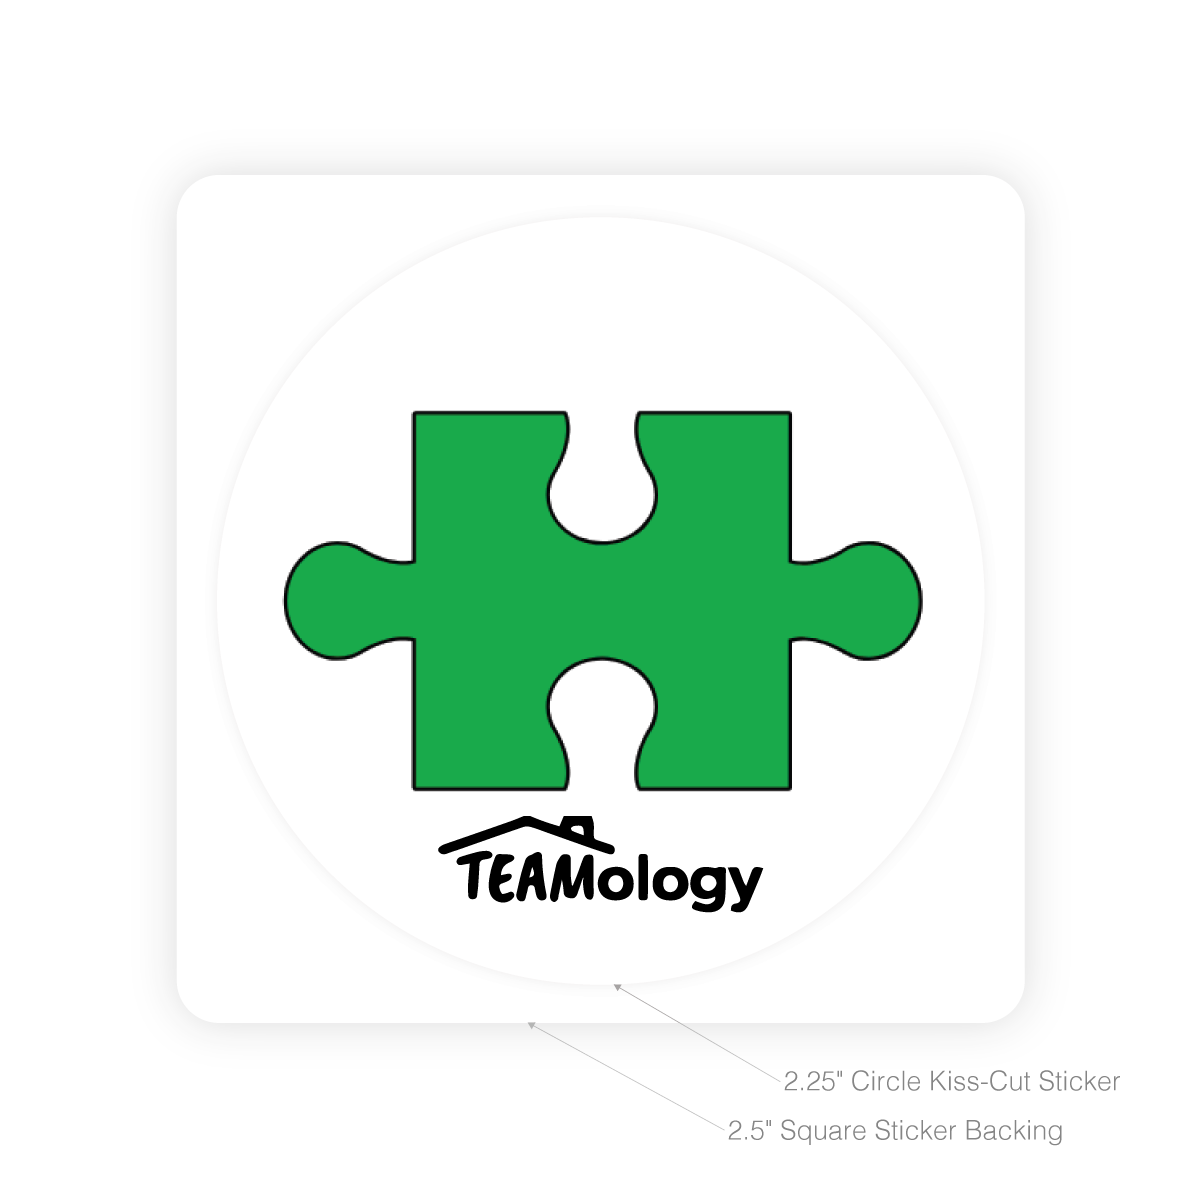 Round Sticker - Teamology (Puzzle)